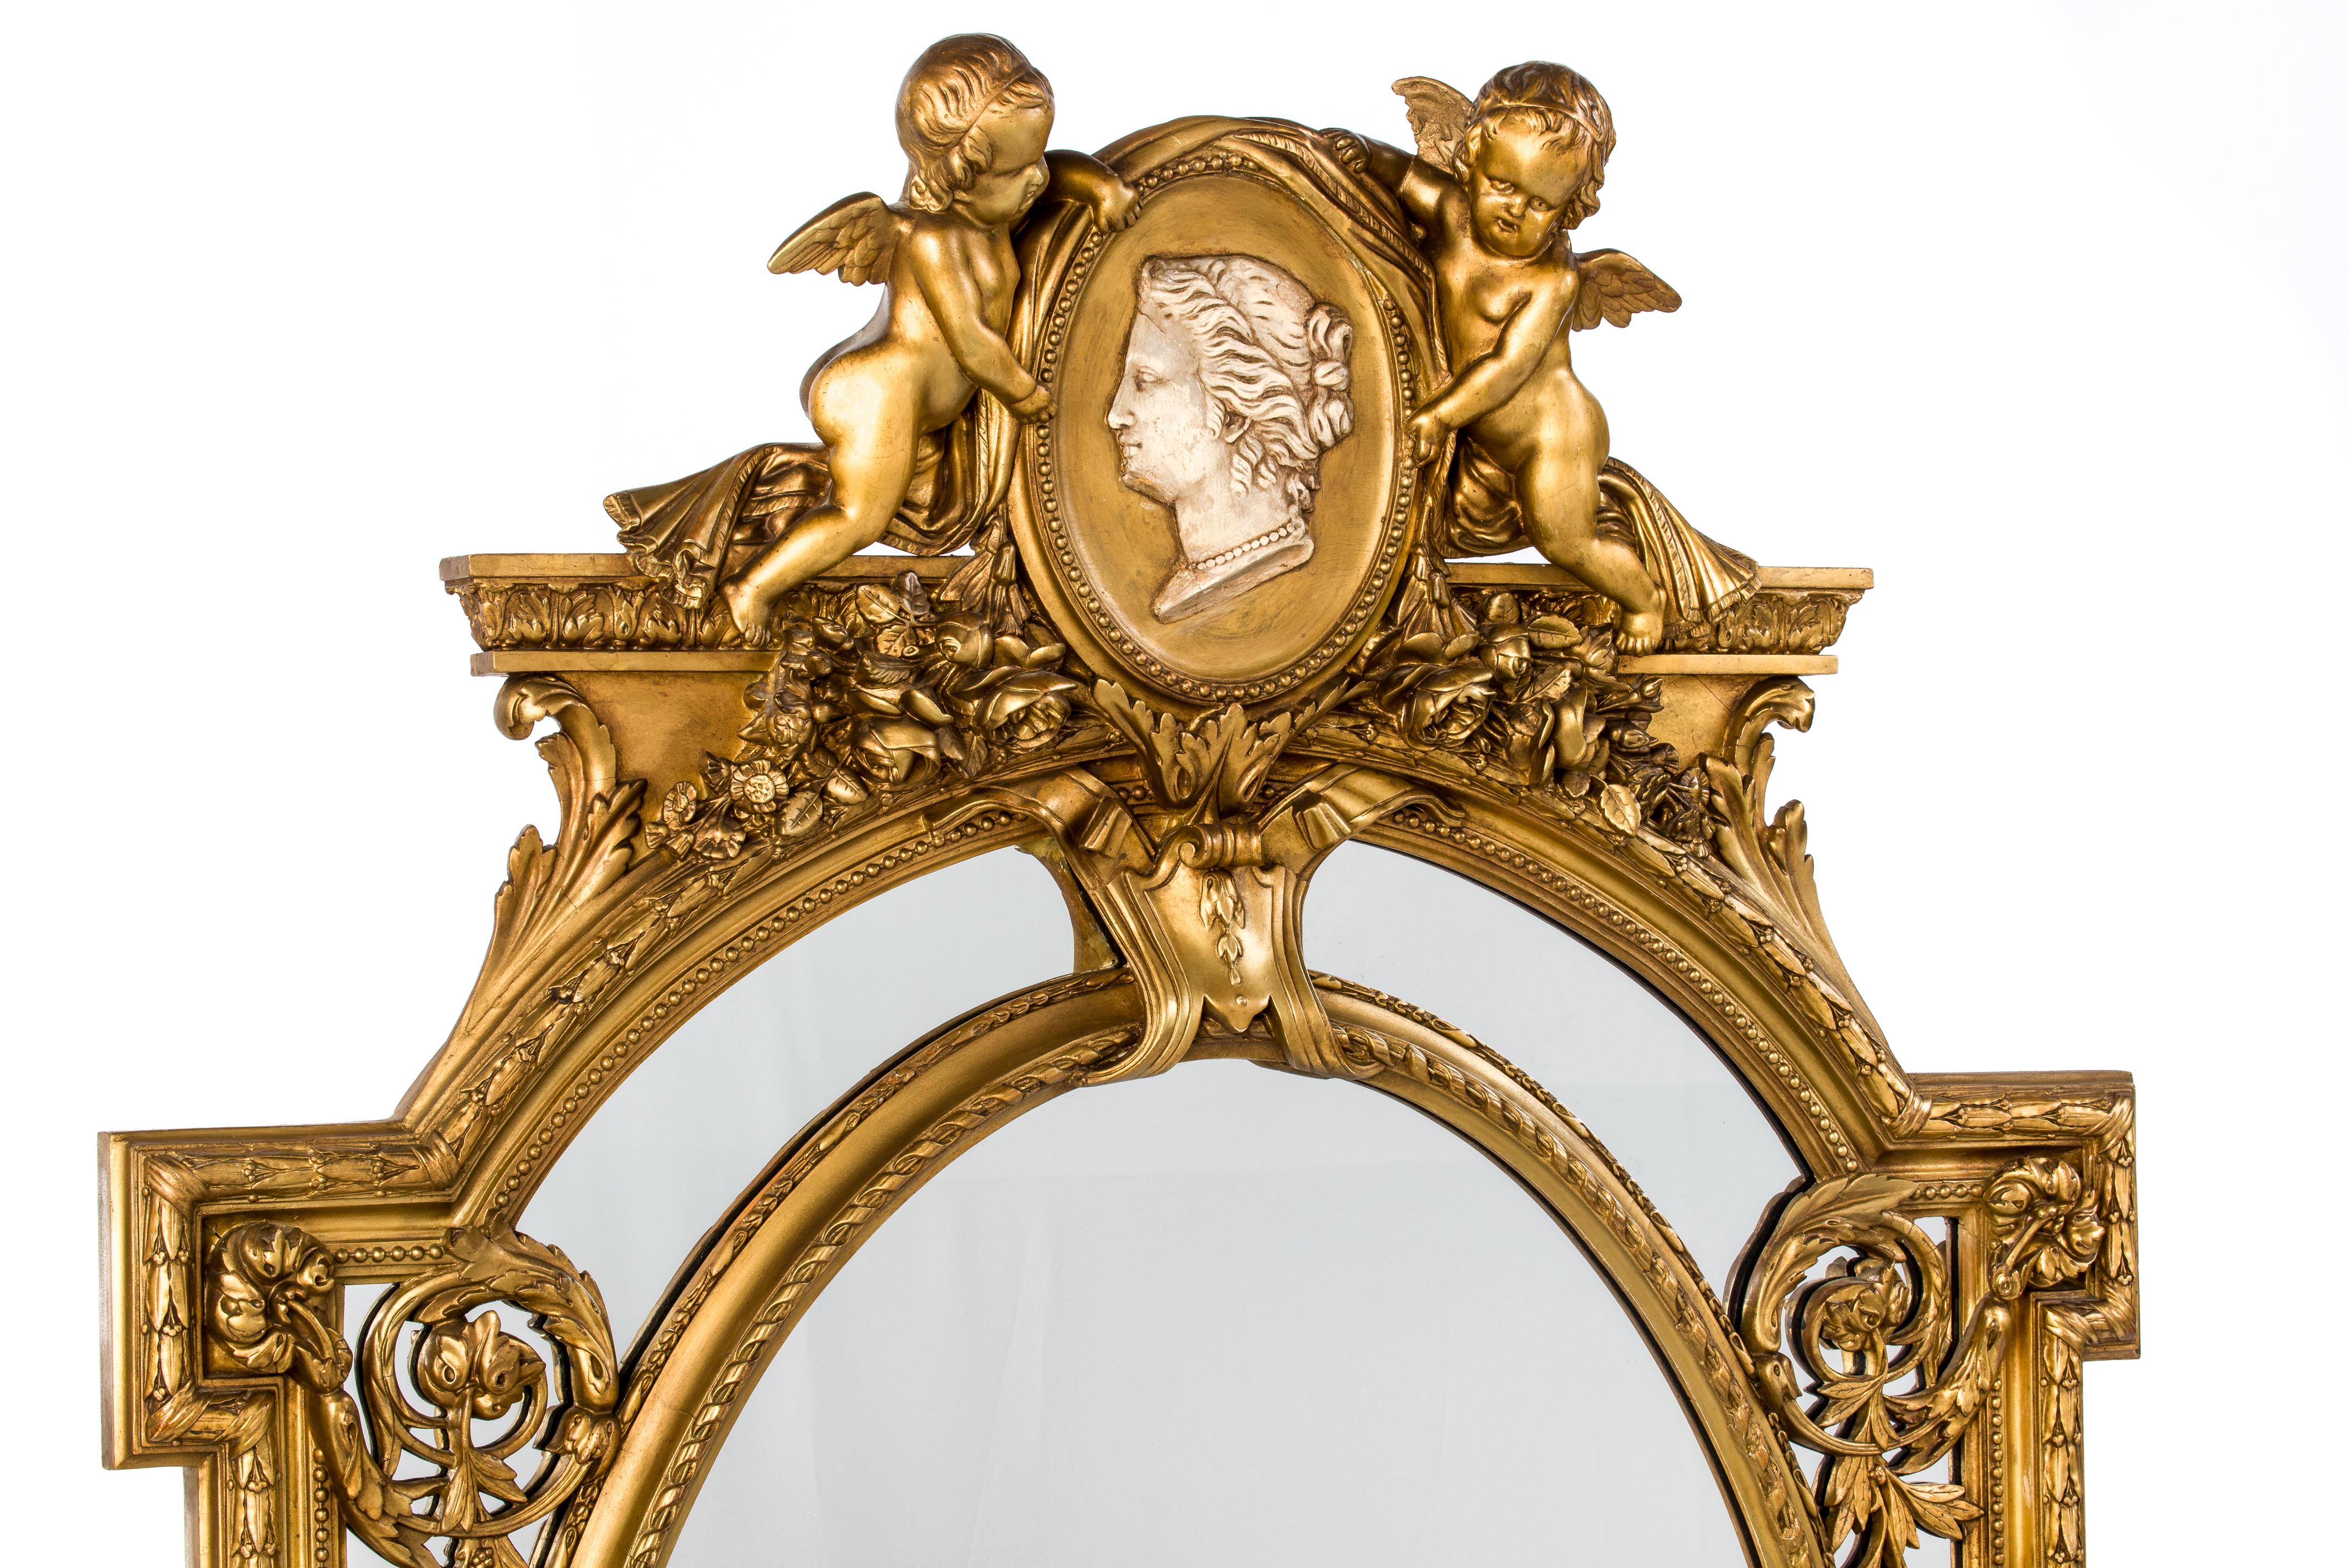 Ce beau miroir à la décoration abondante a été fabriqué en France au milieu du XIXe siècle, vers 1850. Le miroir comporte une plaque centrale ovale flanquée de plaques de miroir plus petites. Ce phénomène est également connu sous le nom de 